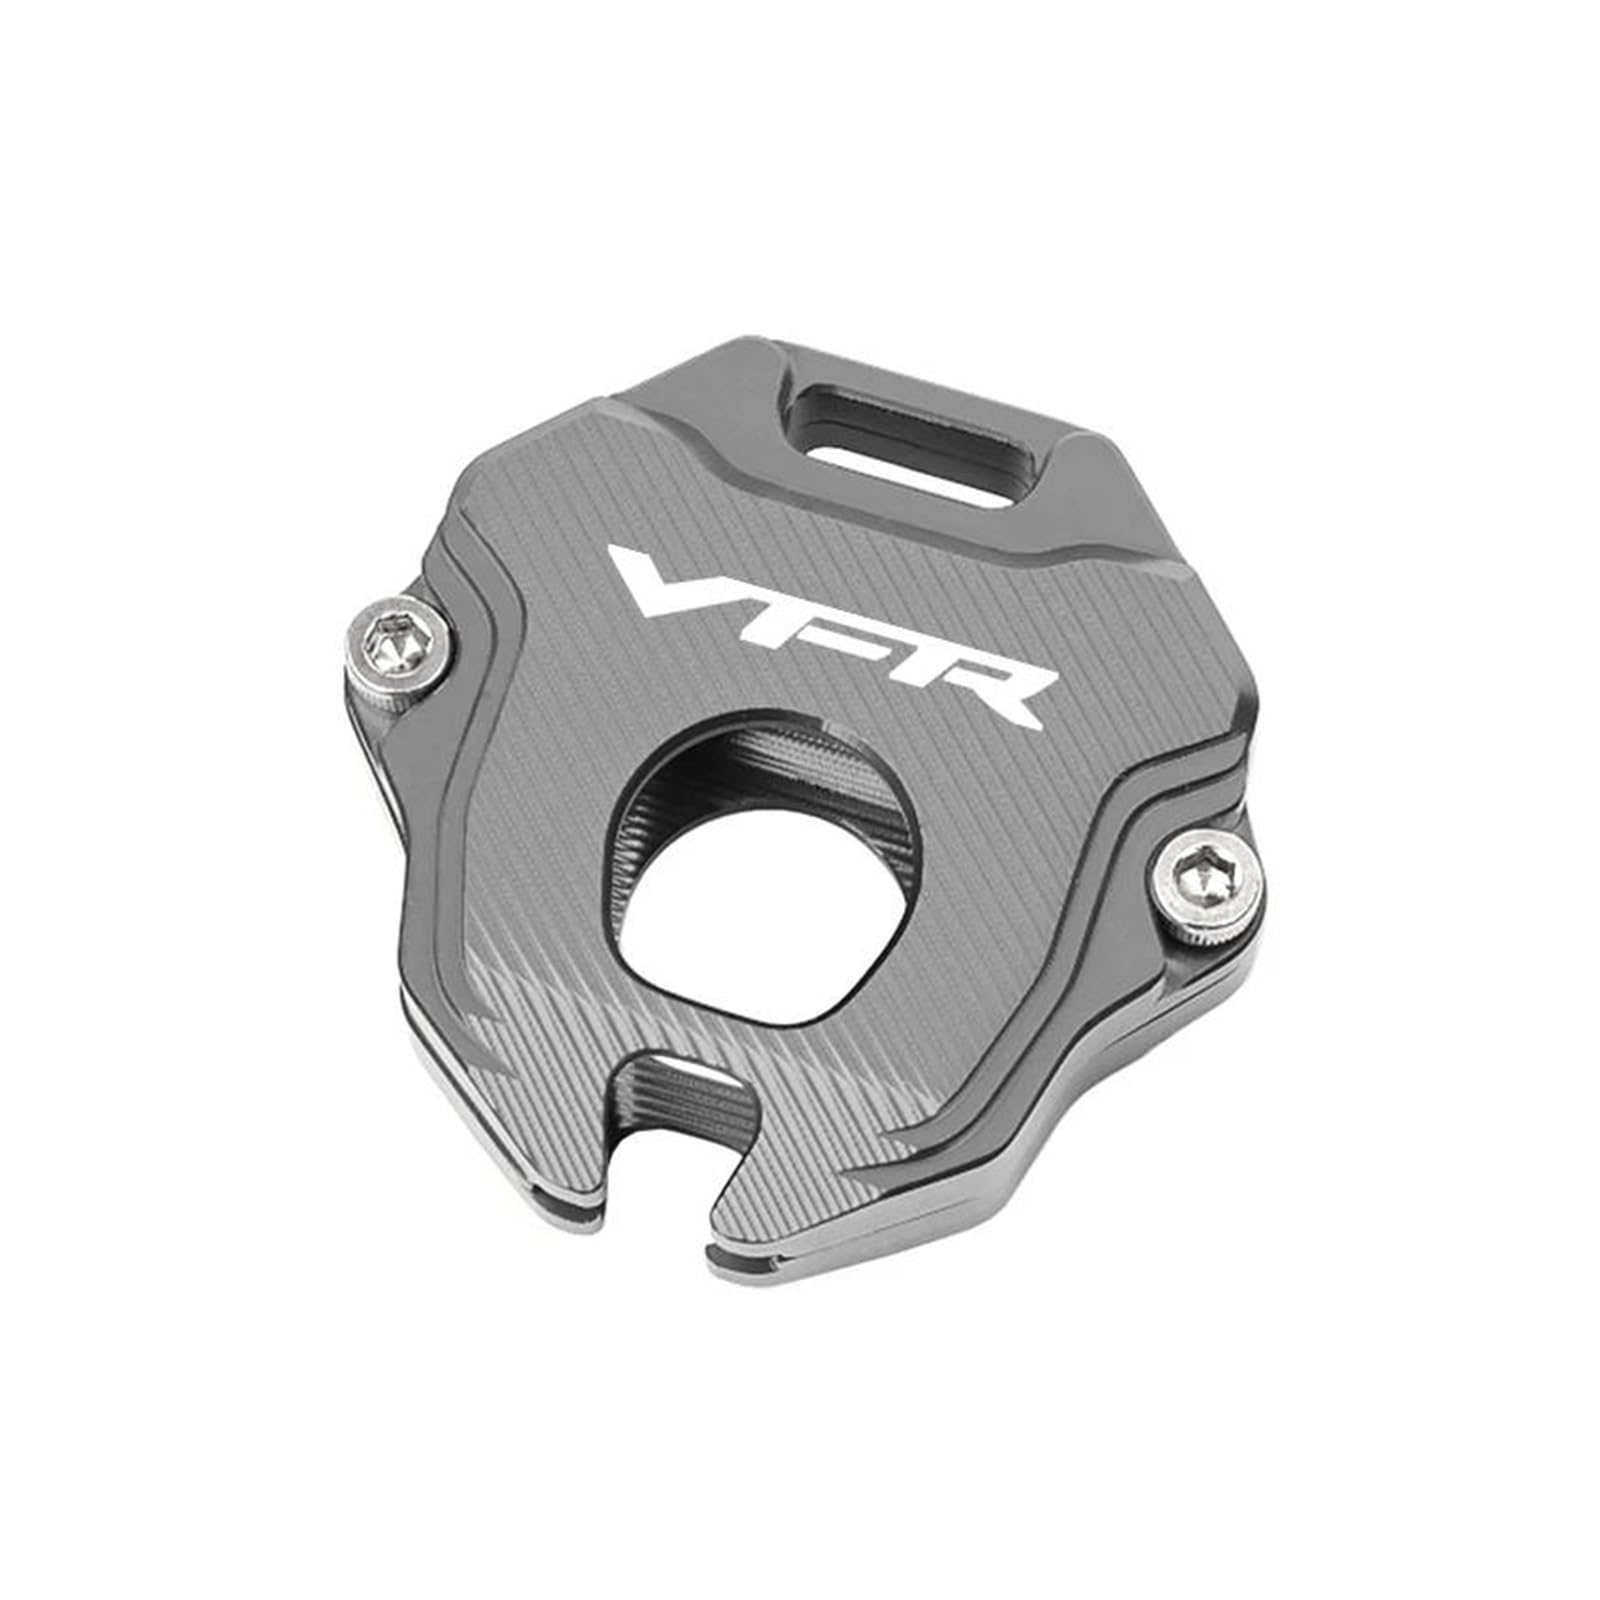 Schlüsselgehäuse aus Aluminiumlegierung Für HON@&DA VFR 800 1200 VFR800 VFR800 Motorradzubehör Schlüsselhülle Hülle Schlüsselanhänger Schlüsselanhänger Schlüsselanhängerhalter(Titanium,A) von SiMuRYP